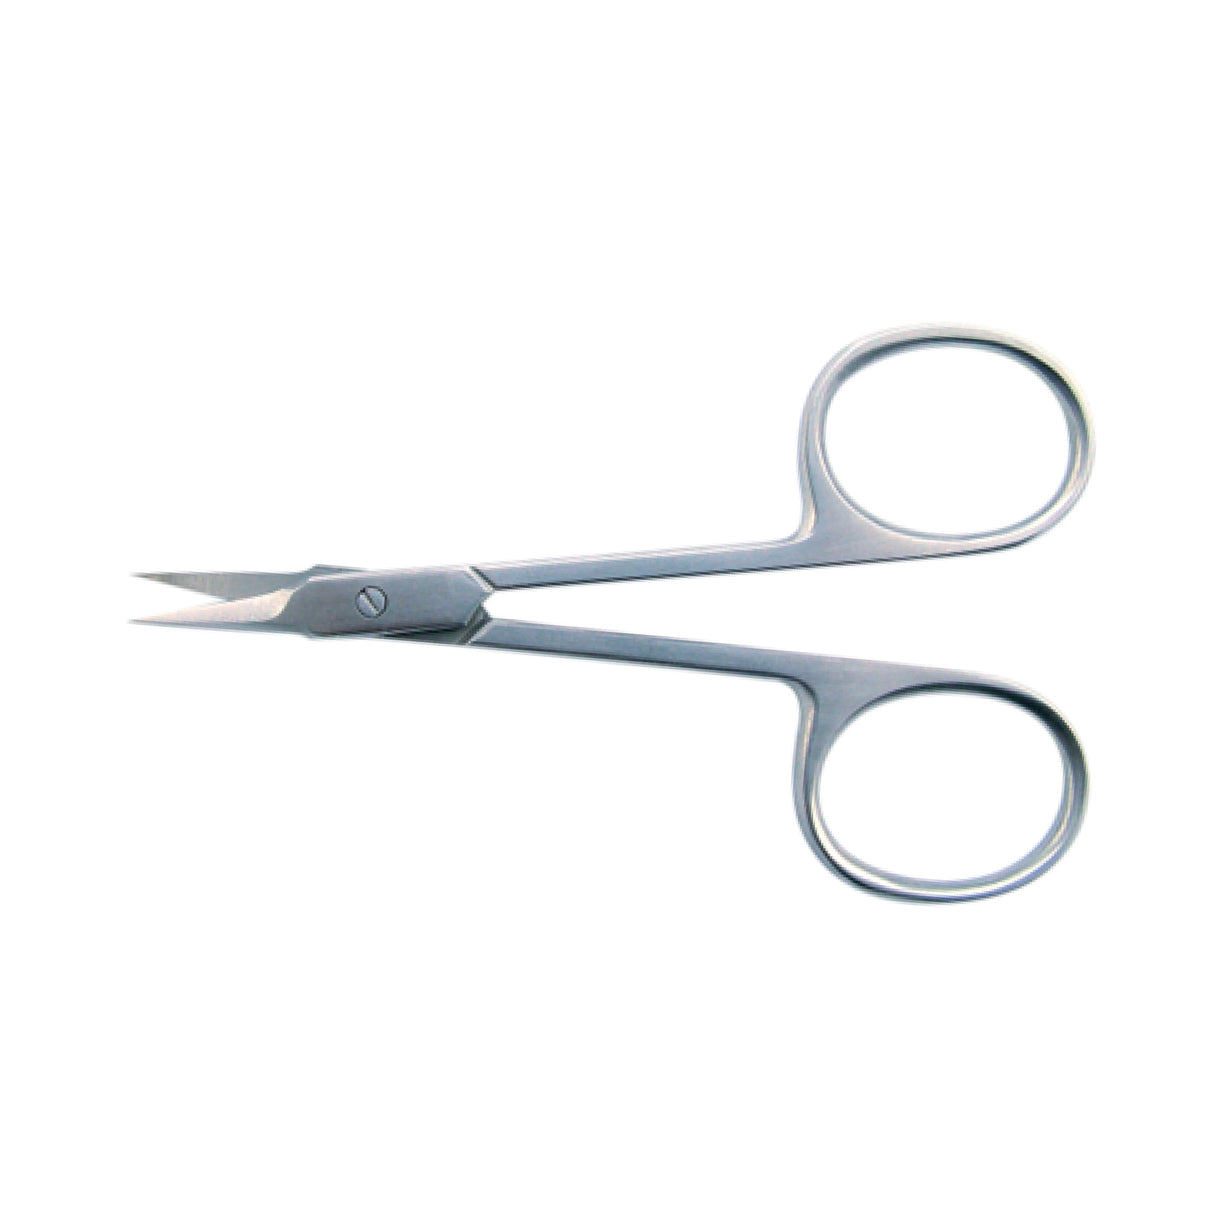 Cuticle scissors 9cm